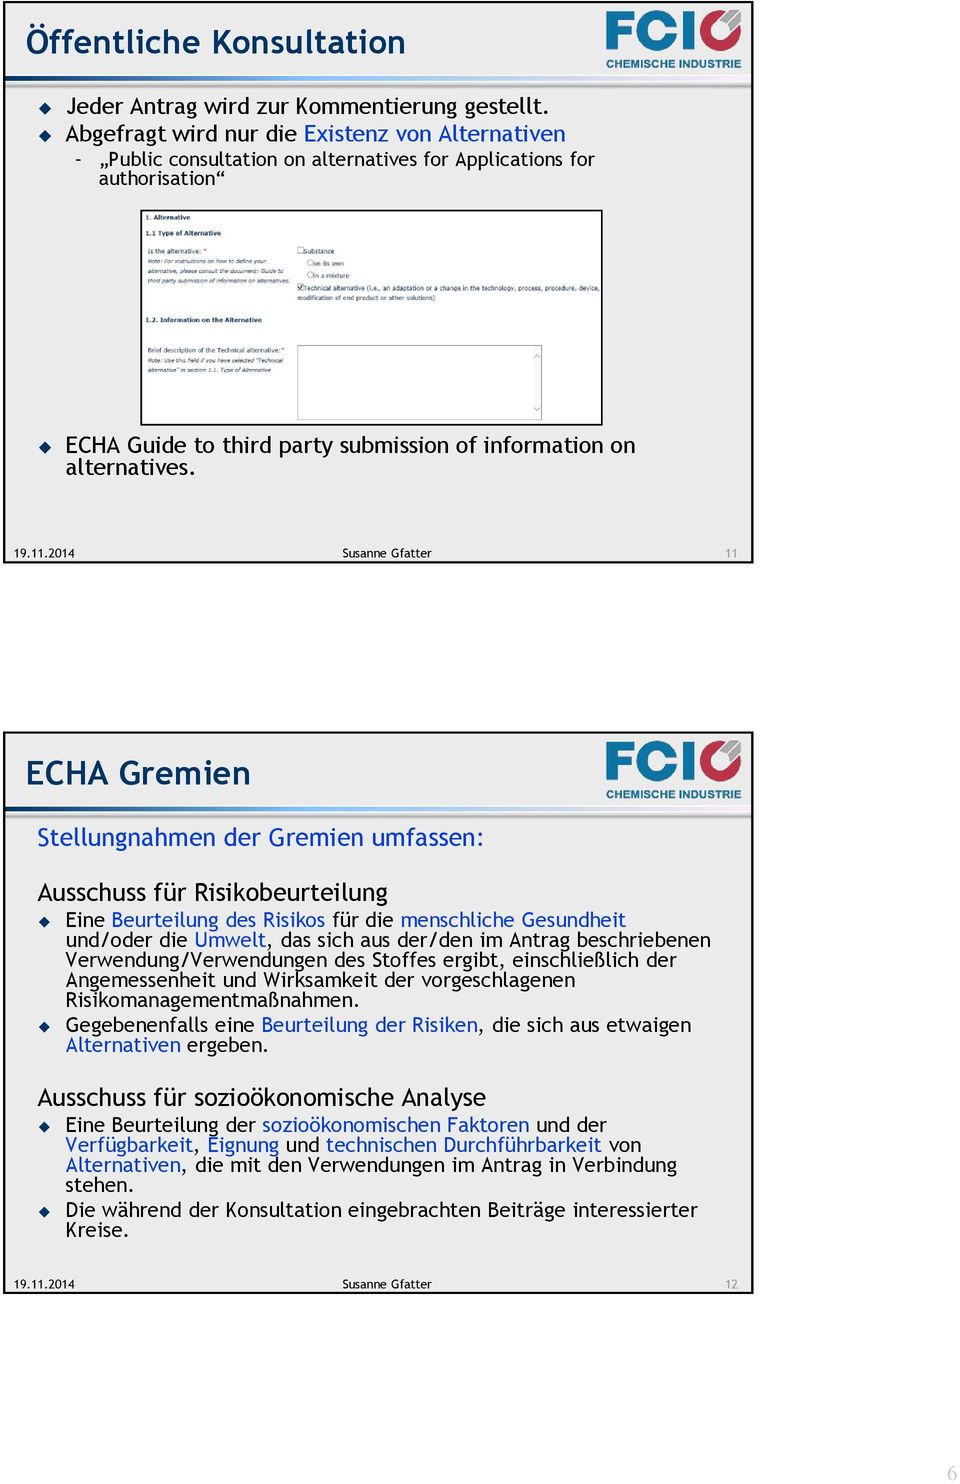 11 ECHA Gremien Stellungnahmen der Gremien umfassen: Ausschuss für Risikobeurteilung Eine Beurteilung des Risikos für die menschliche Gesundheit und/oder die Umwelt, das sich aus der/den im Antrag